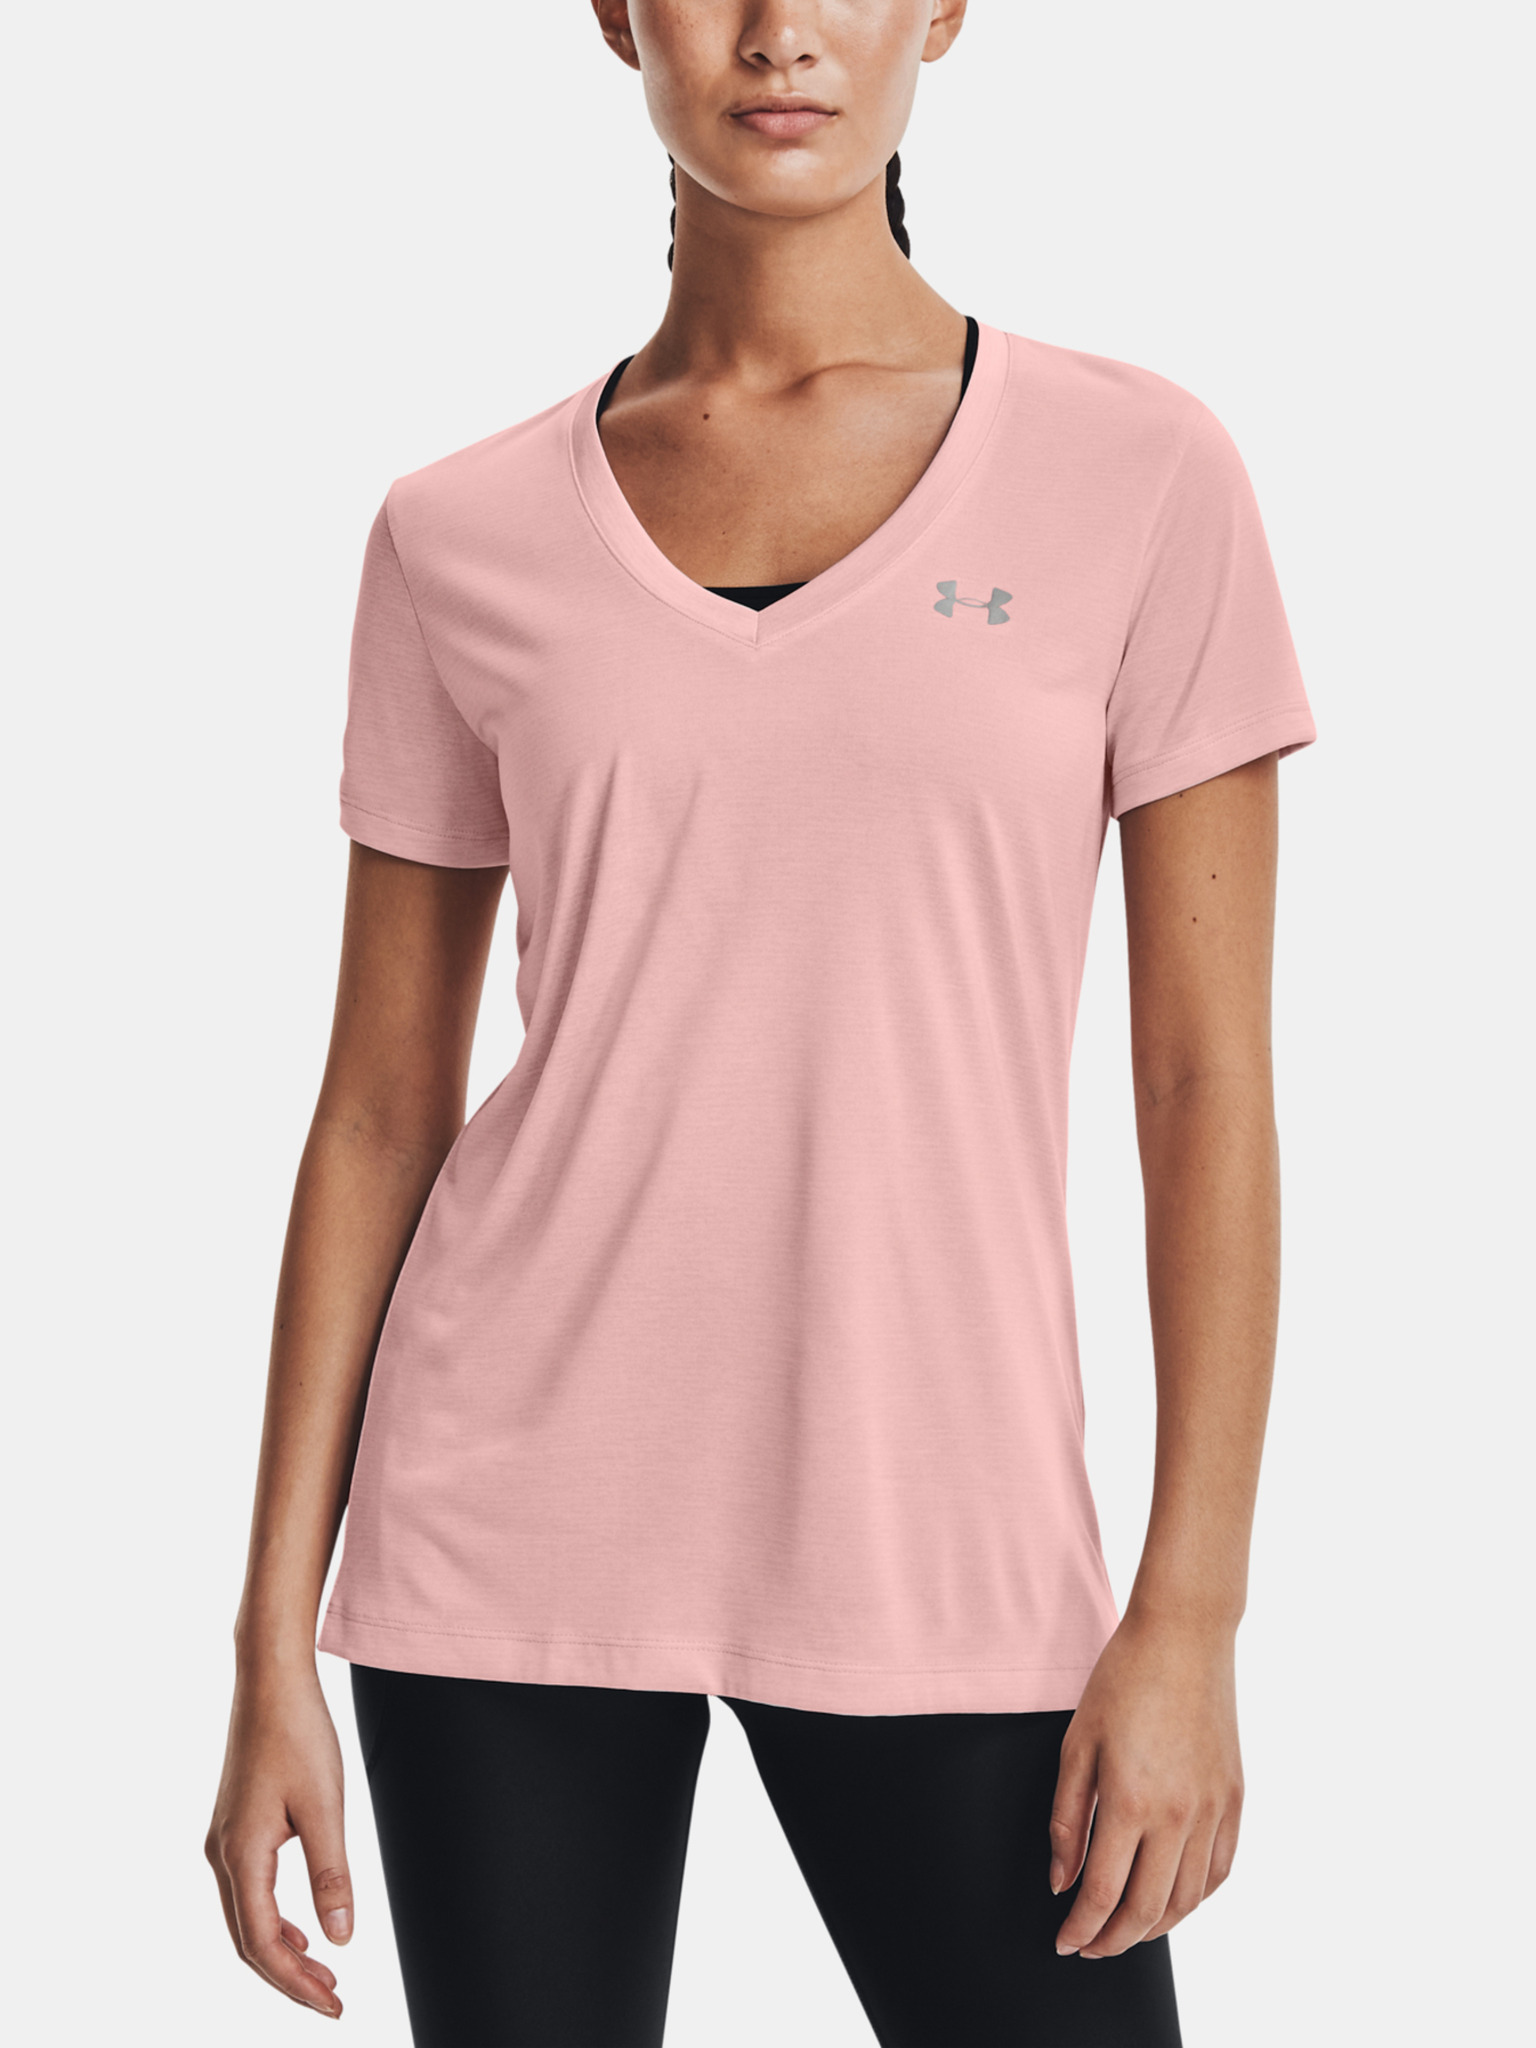 Under Armour Womens Tech V-neck T-Shirt - Pink